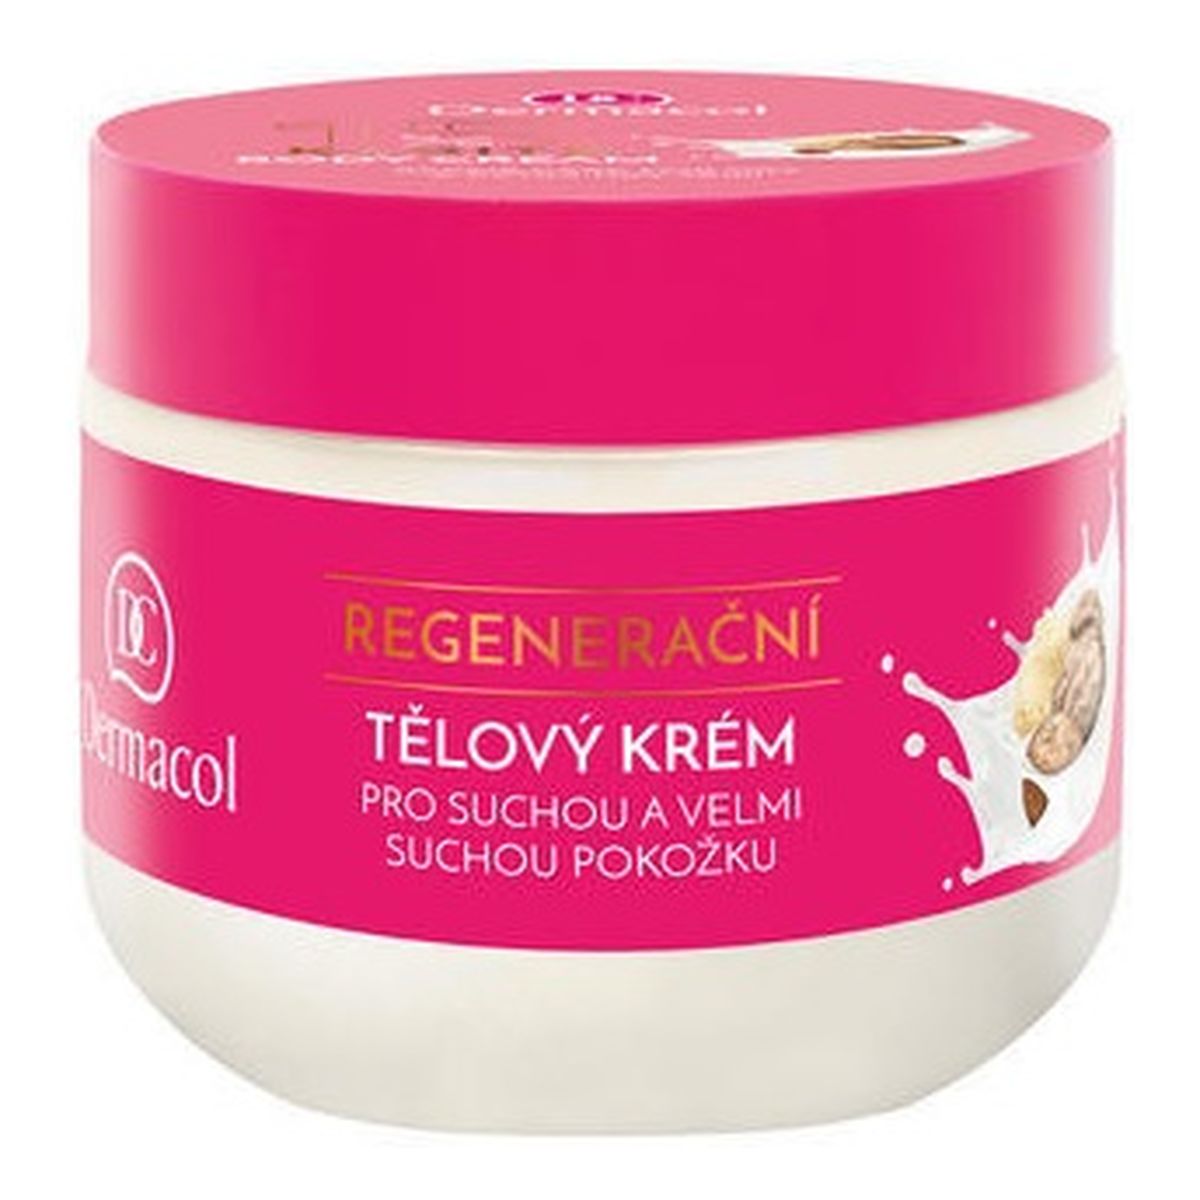 Dermacol Karite Body Cream regenerujący Krem do ciała do skóry suchej masło shea 300ml